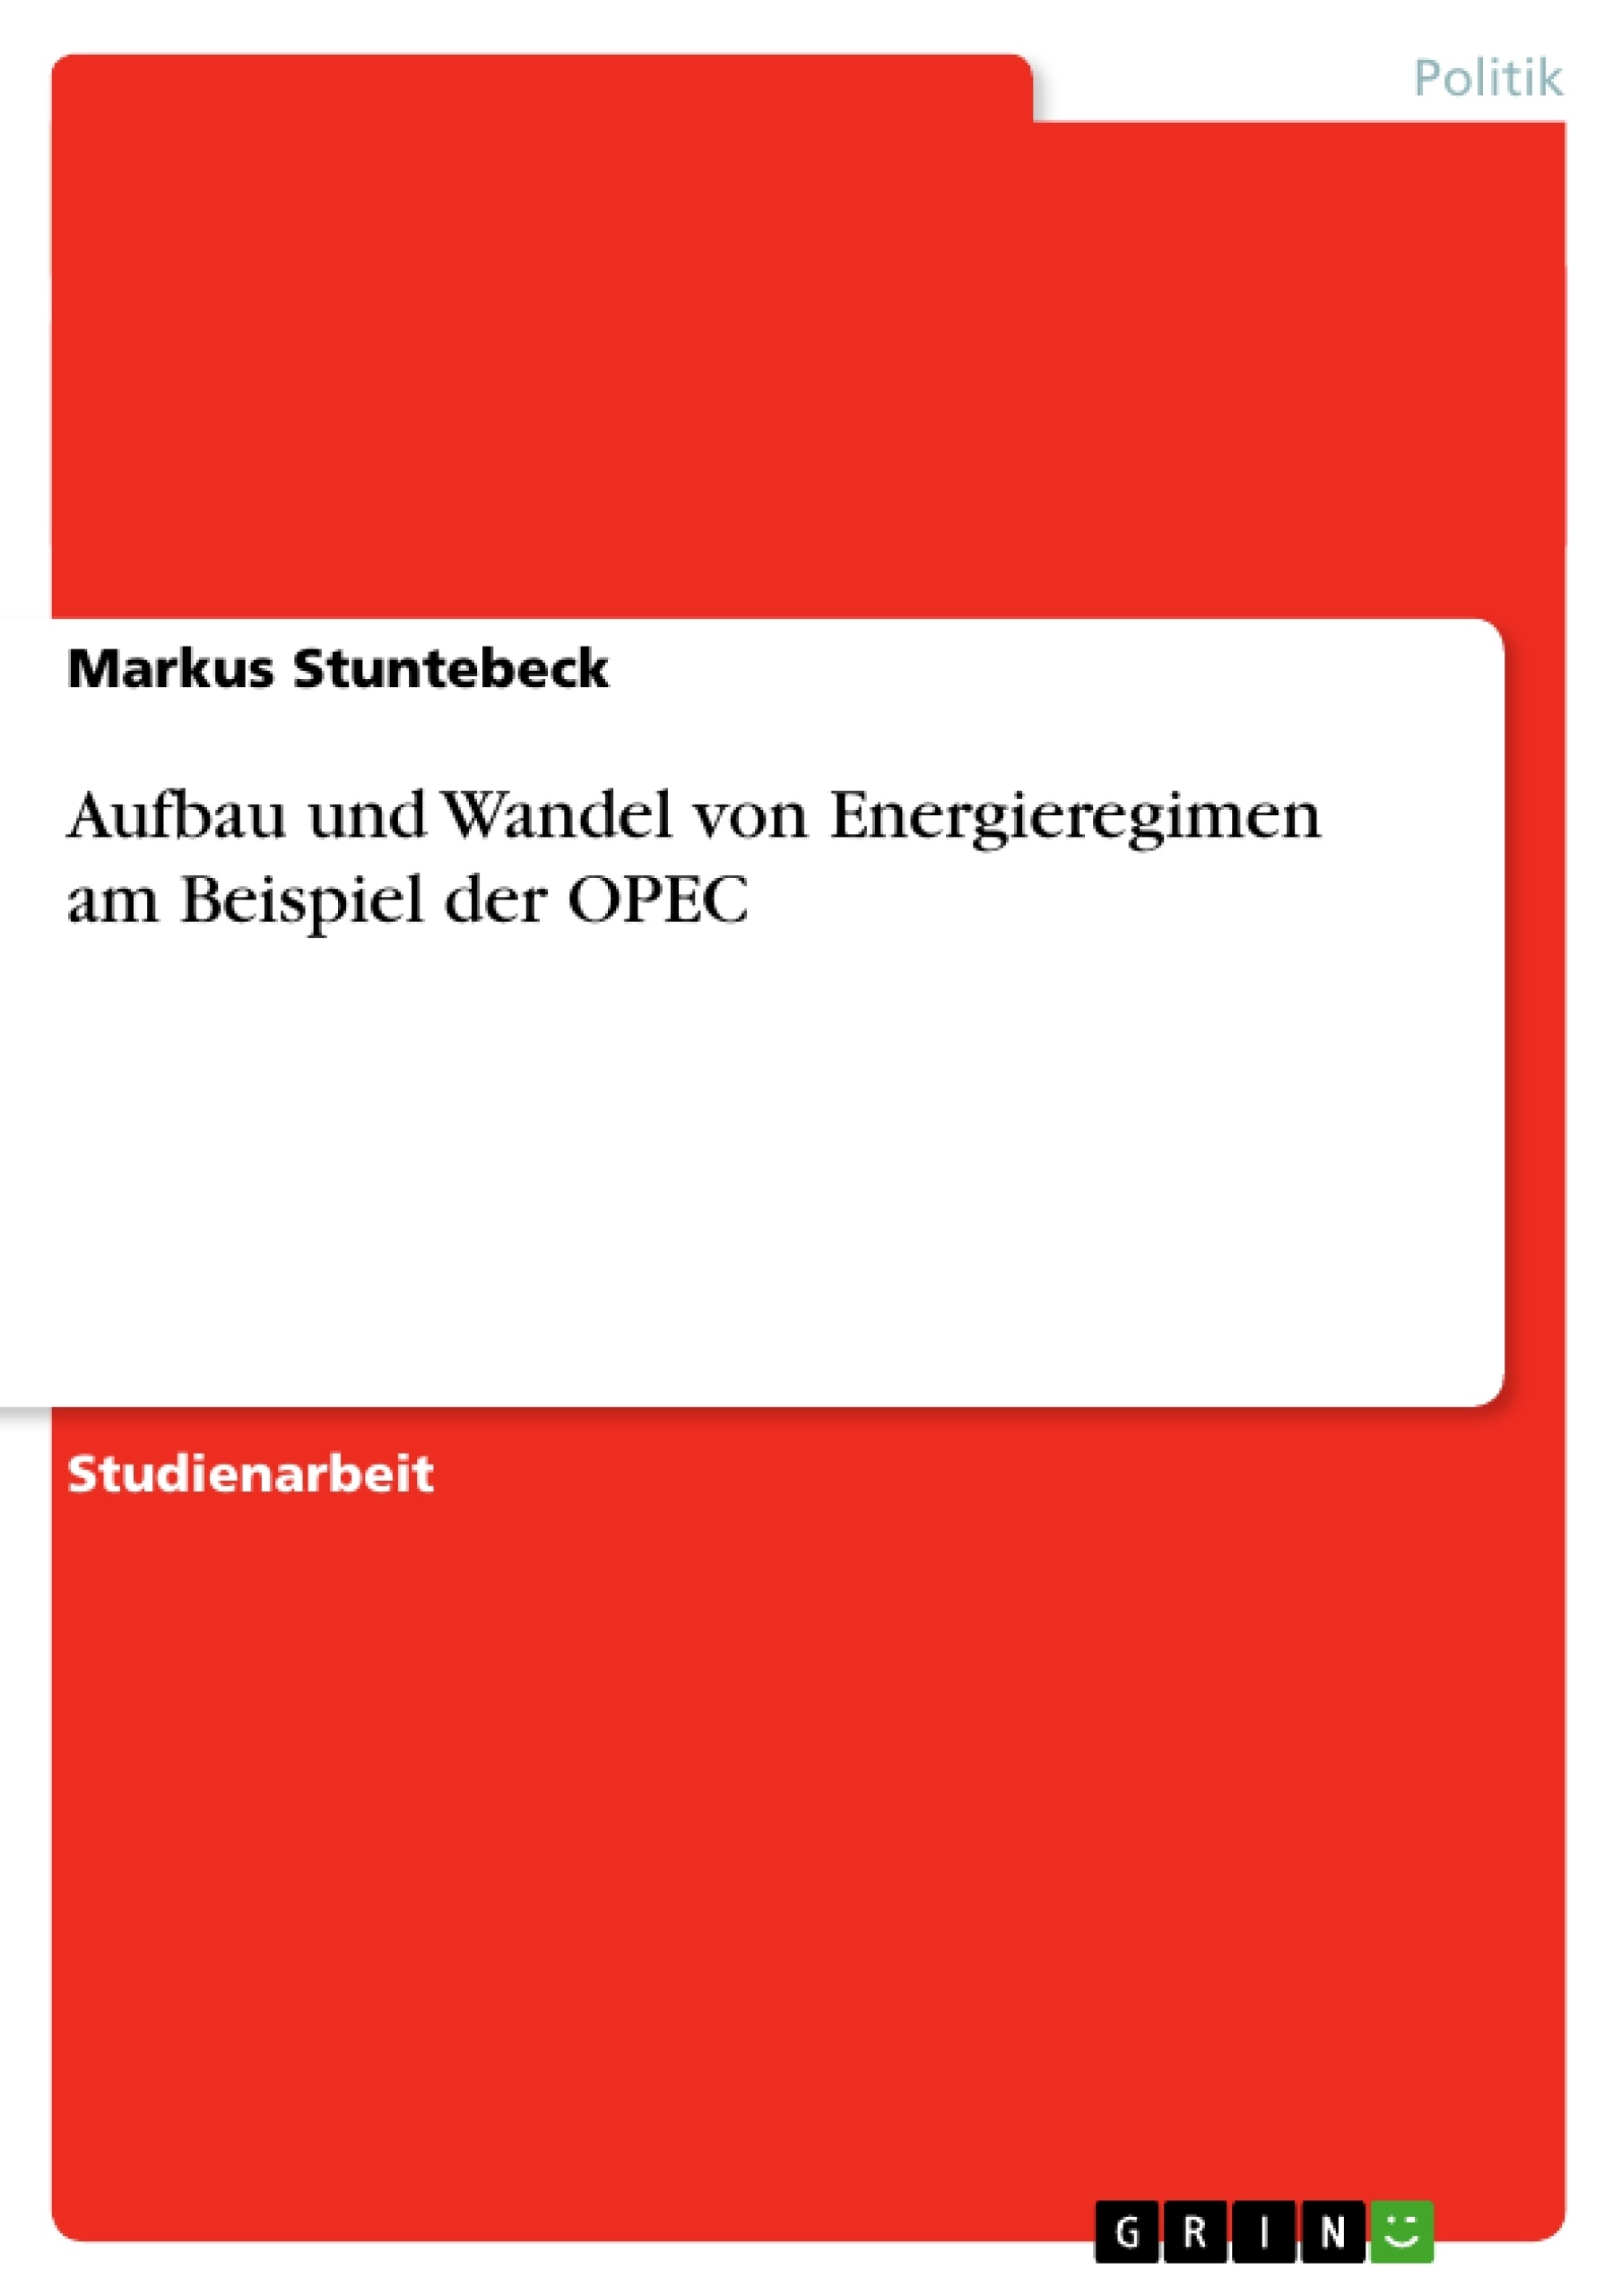 Title: Aufbau und Wandel von Energieregimen am Beispiel der OPEC